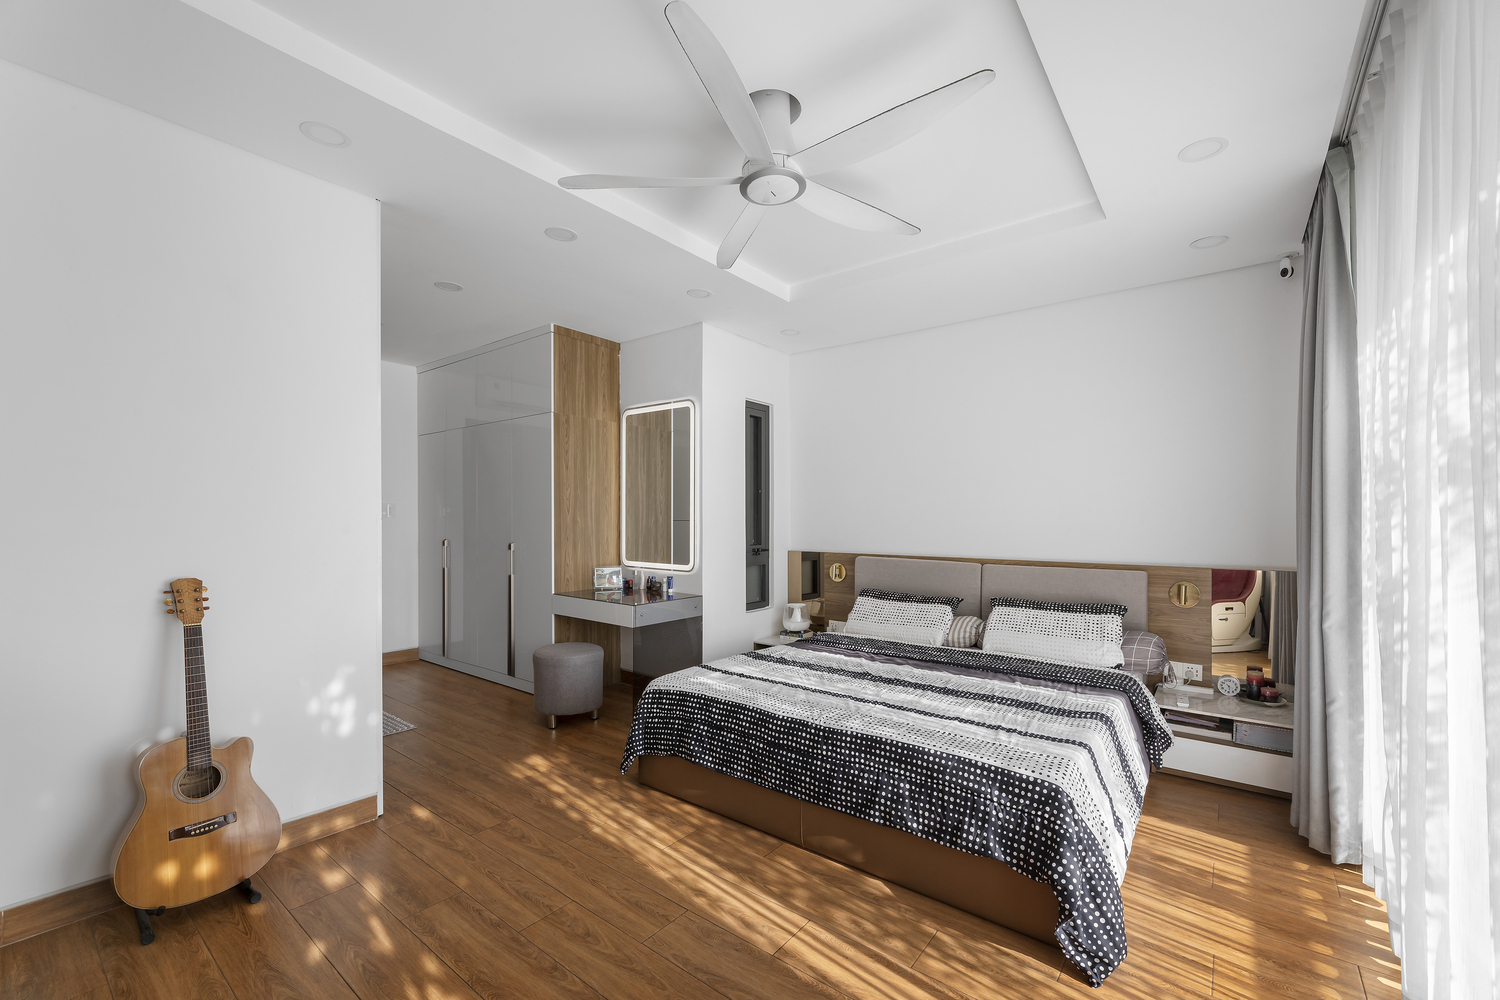 Phòng ngủ có thiết kế đơn giản với hai tông màu trắng, nâu gỗ chủ đạo mang đến sự thư thái, dễ chịu cho người dùng